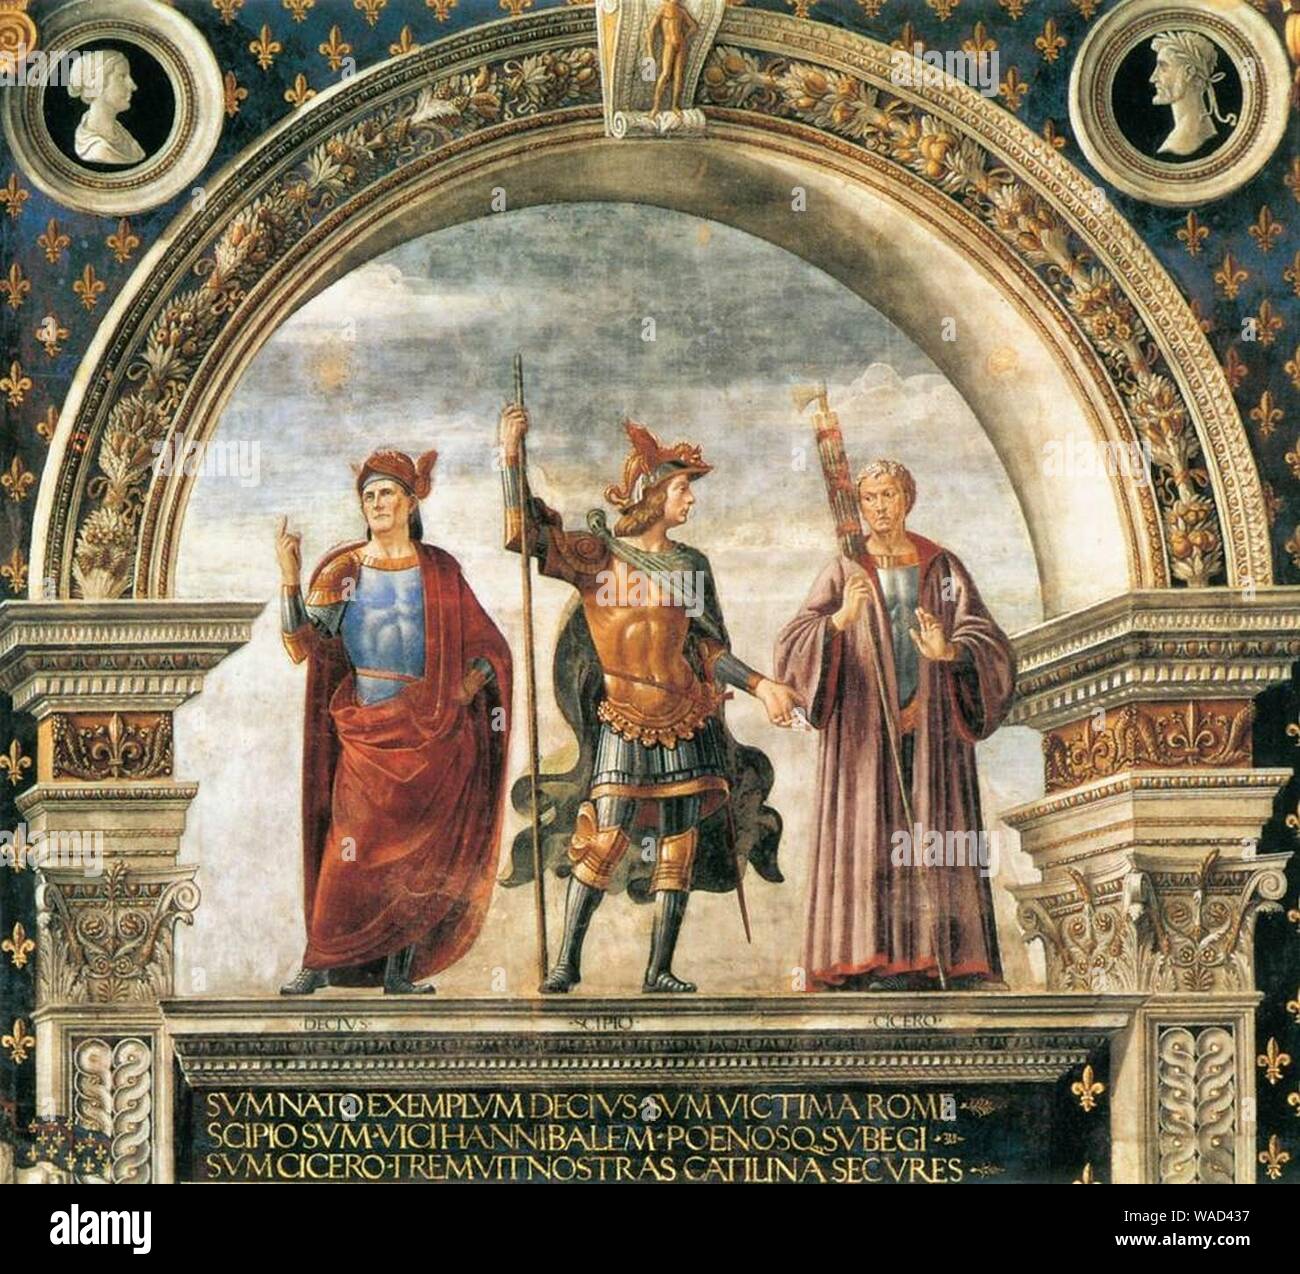 Domenico ghirlandaio, affreschi della sala dei gigli 03. Stock Photo